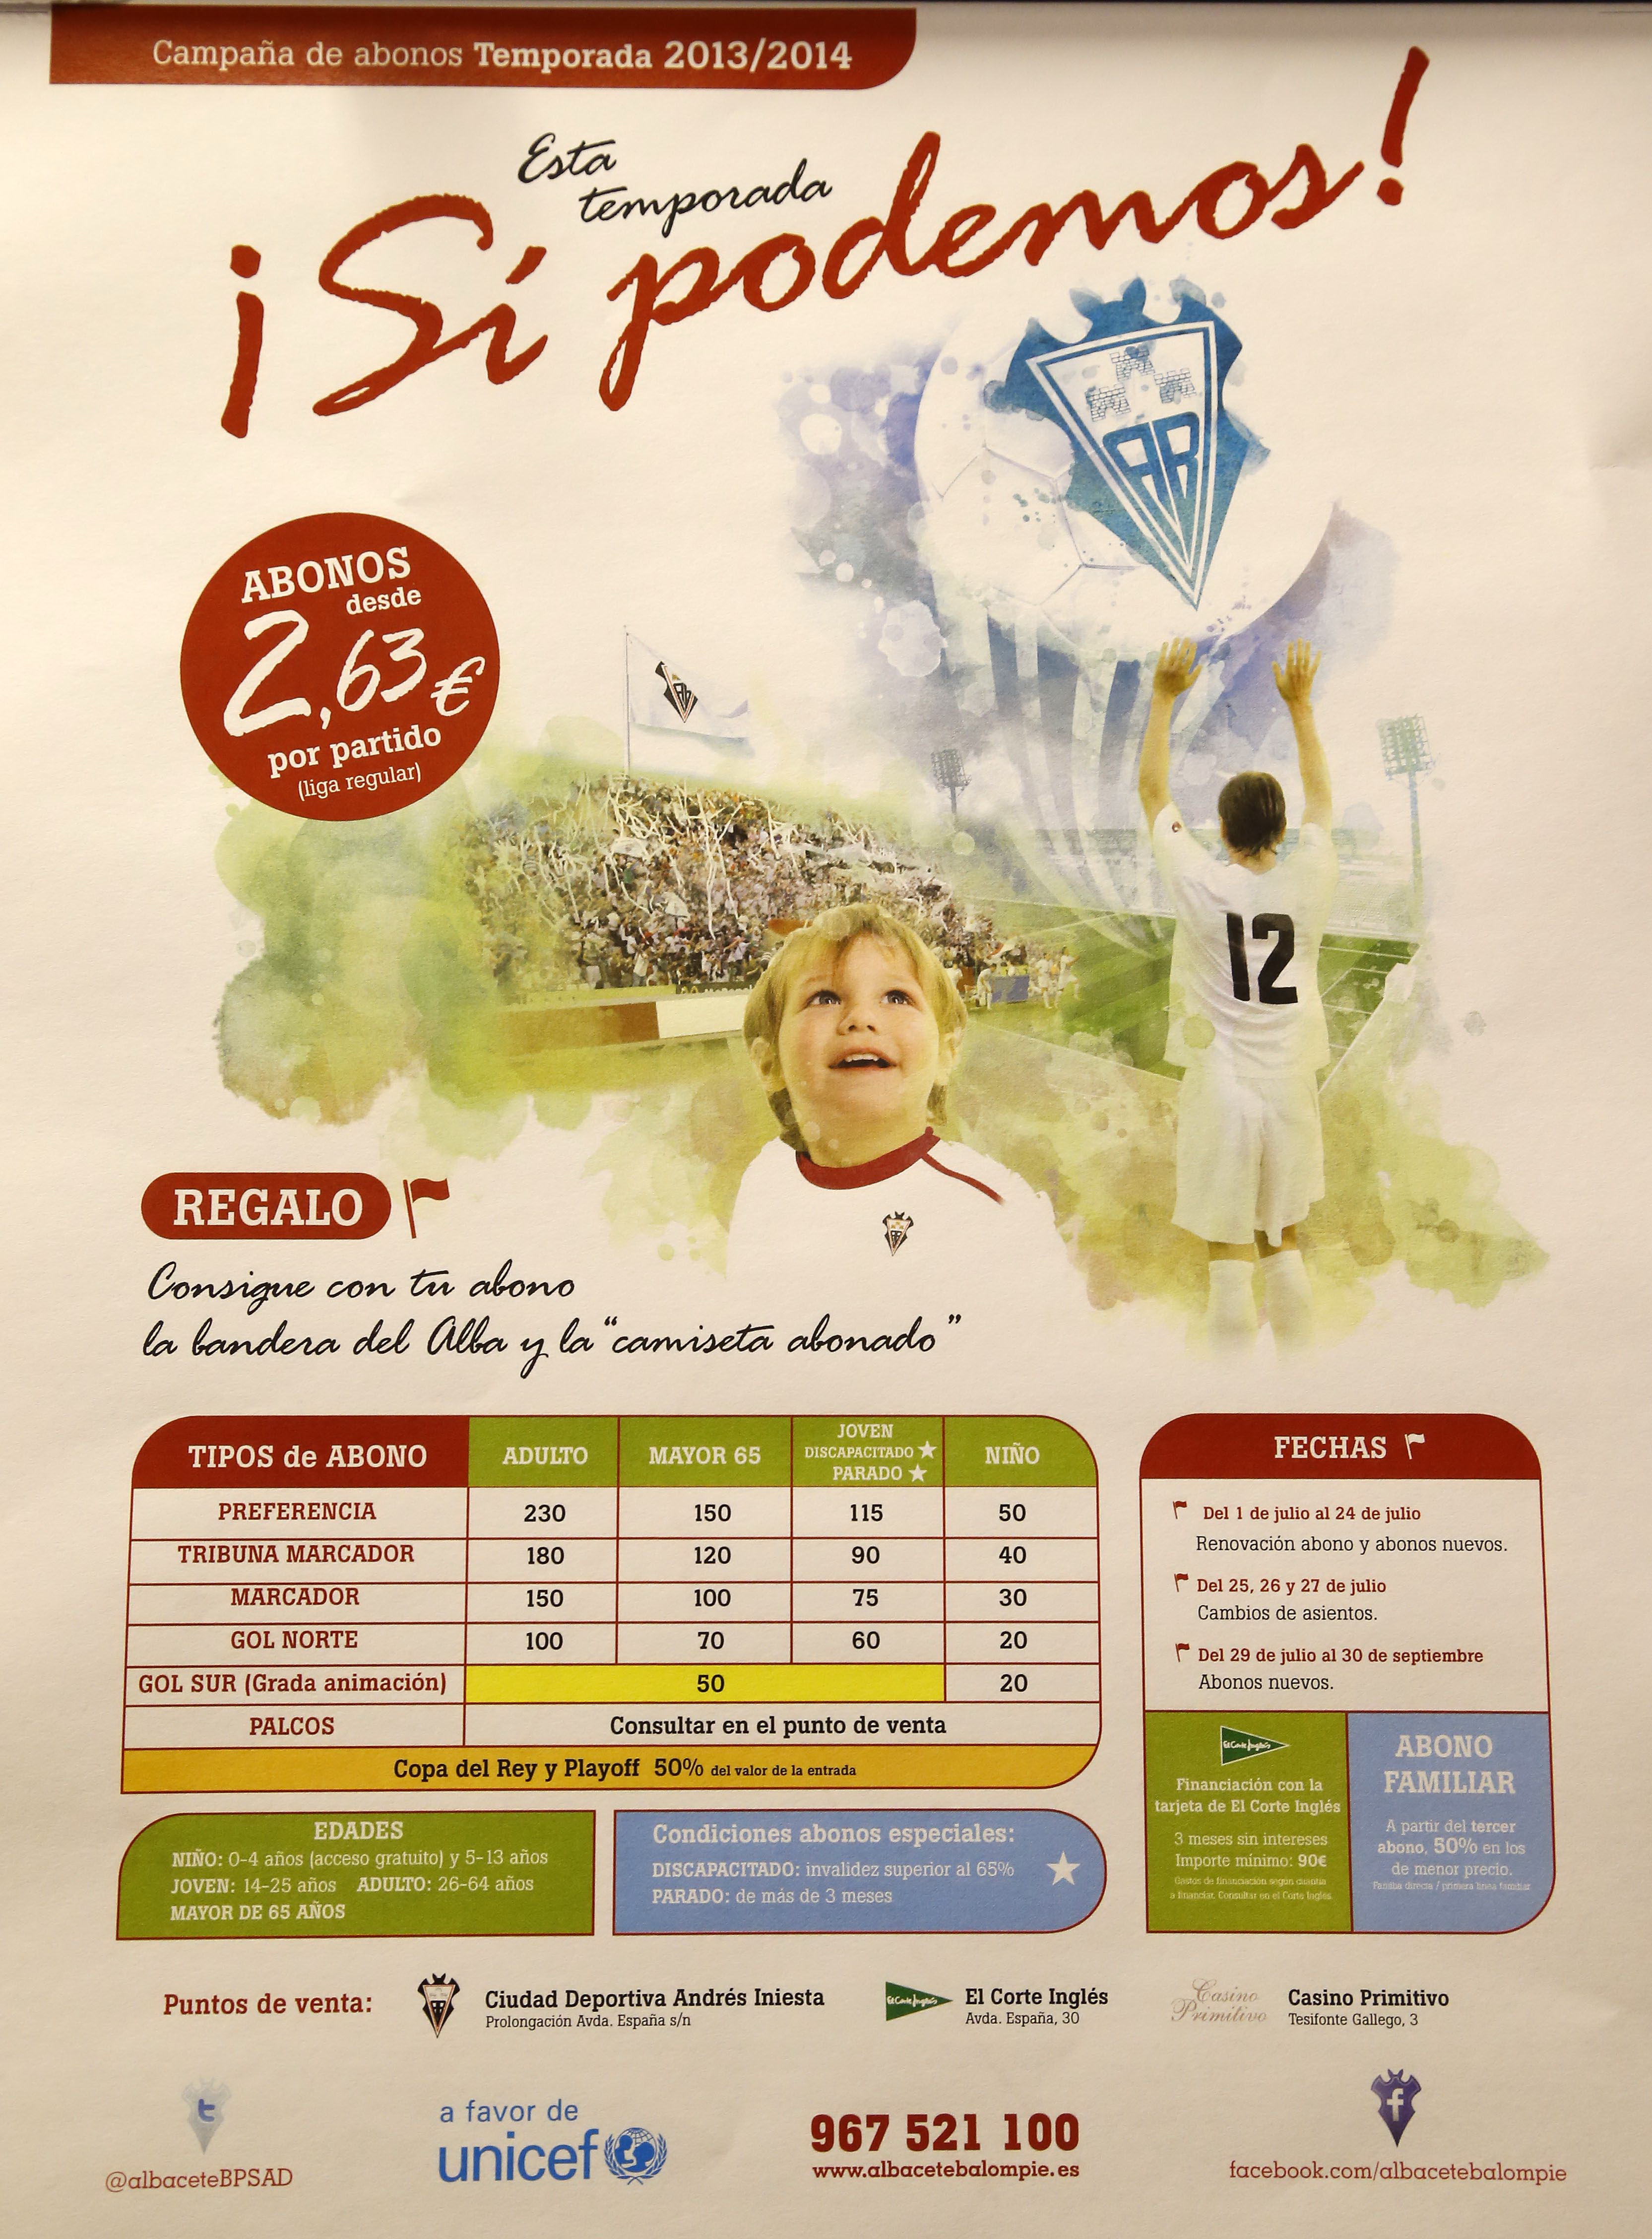 Campaña de Abonos 2013-2014 del Albacete Balompié